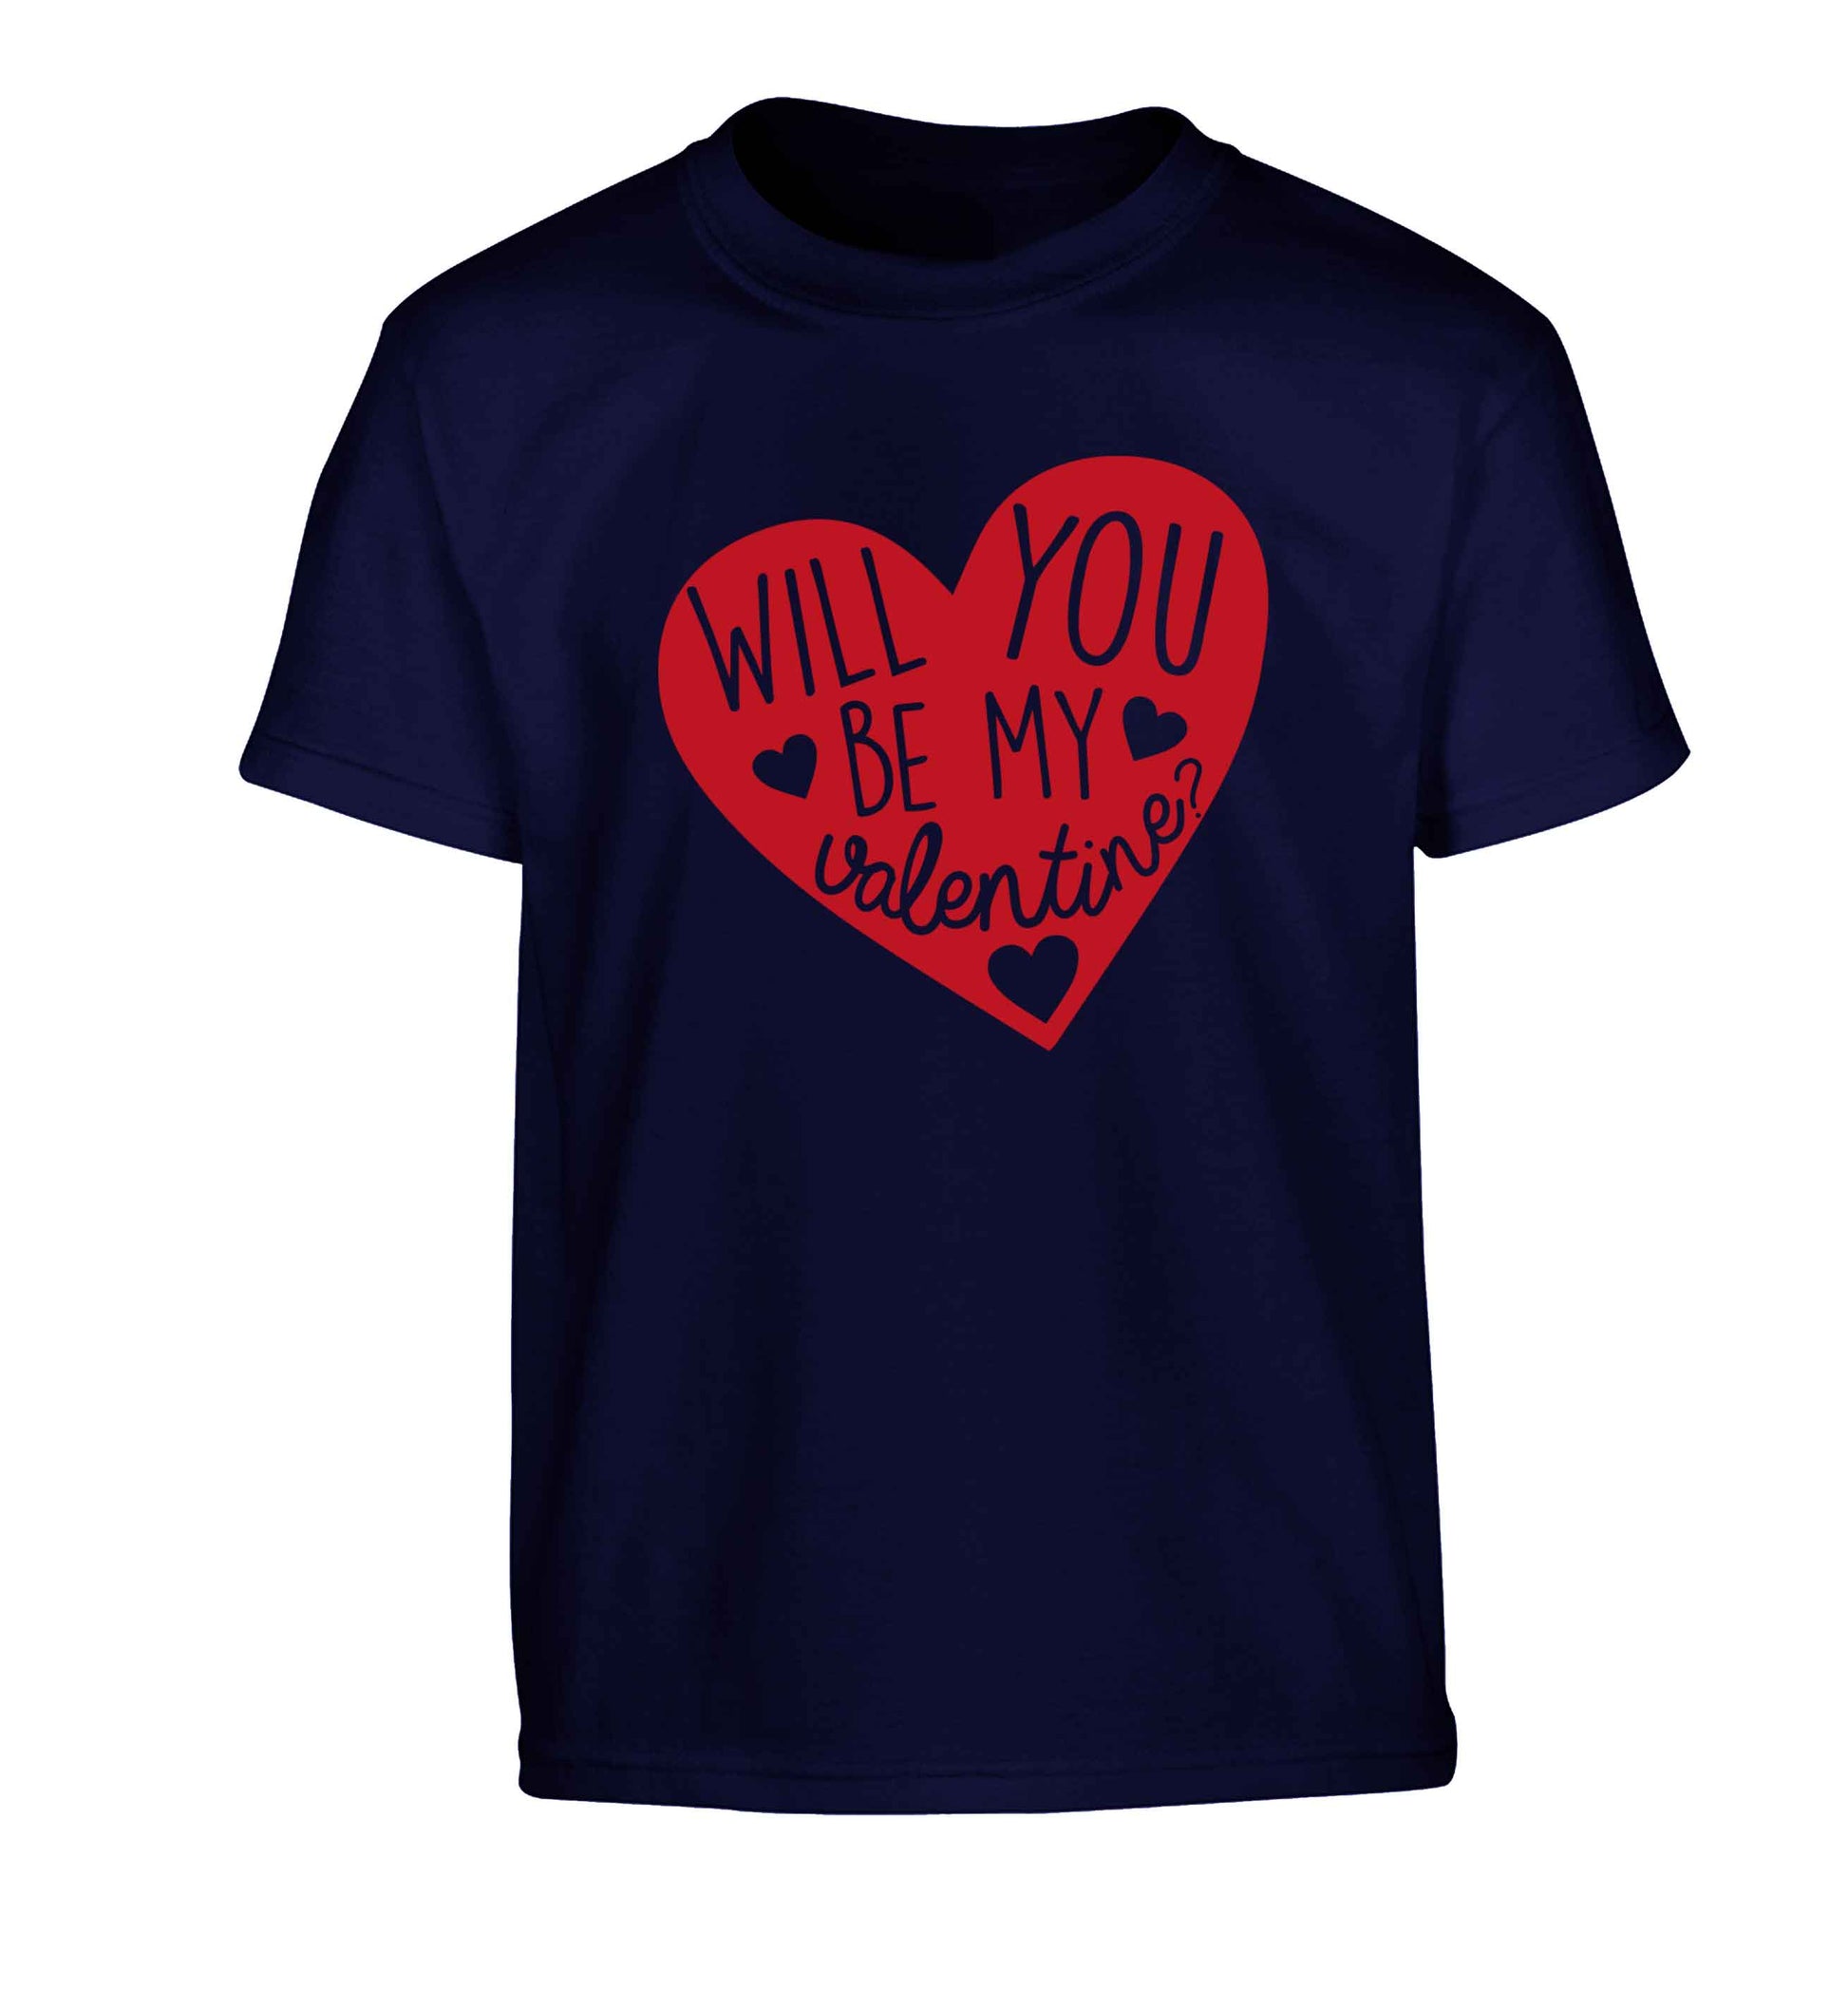 Will you be my valentine? Children's navy Tshirt 12-13 Years